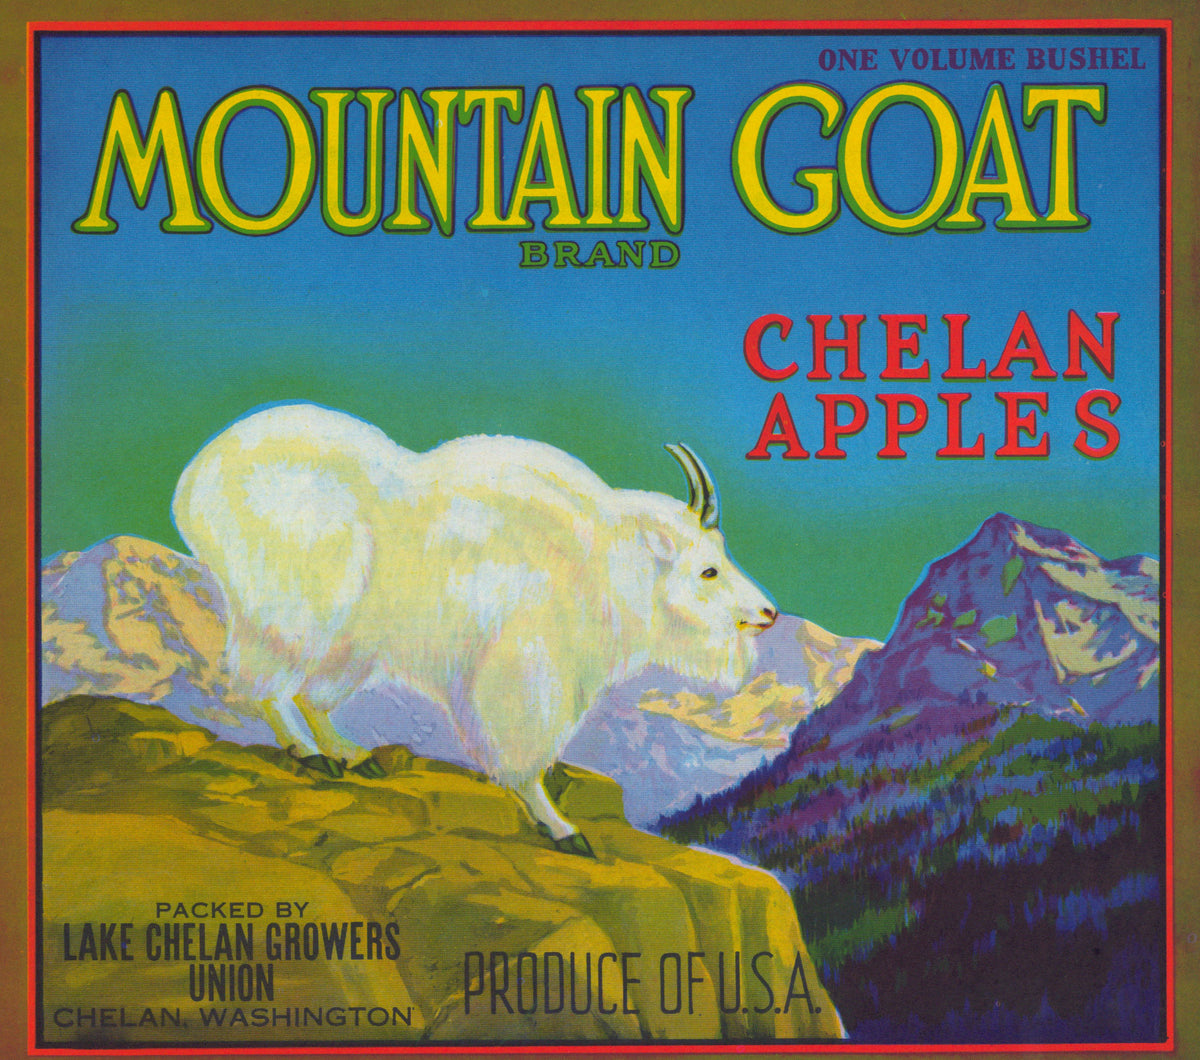 Mountain Goat Chelan Apples- Crate Label - Authentic Vintage Antique Print